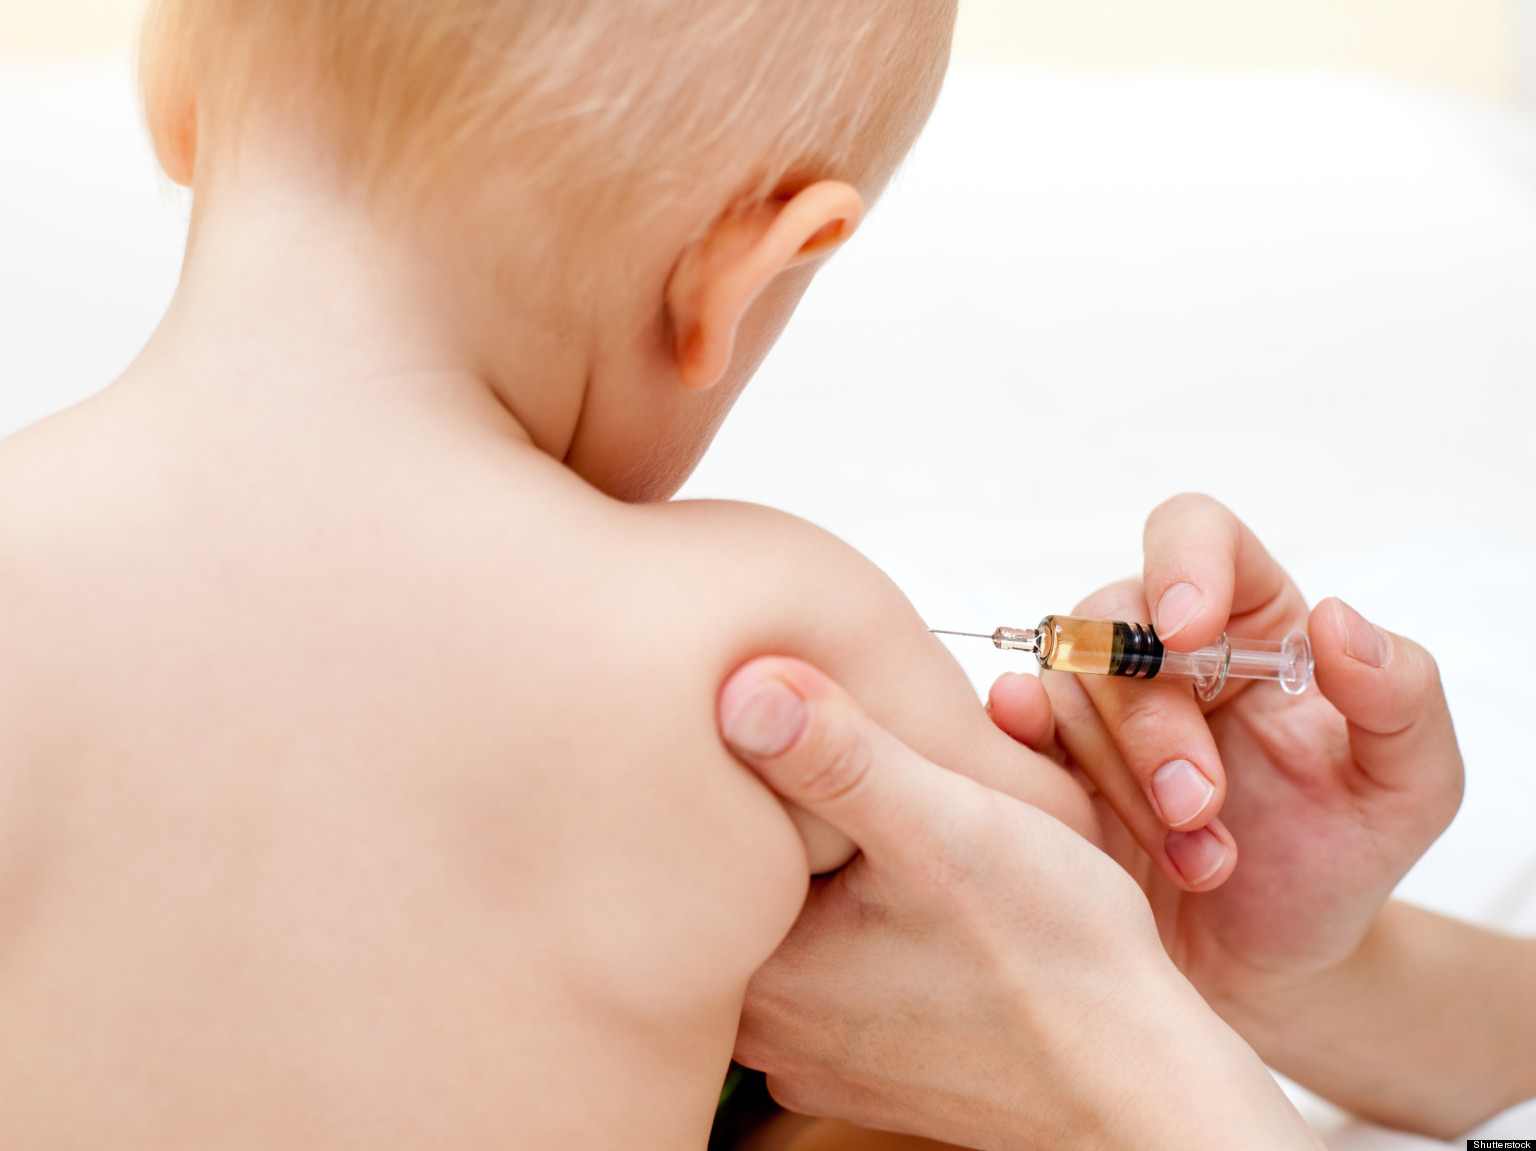 vaccinare copii